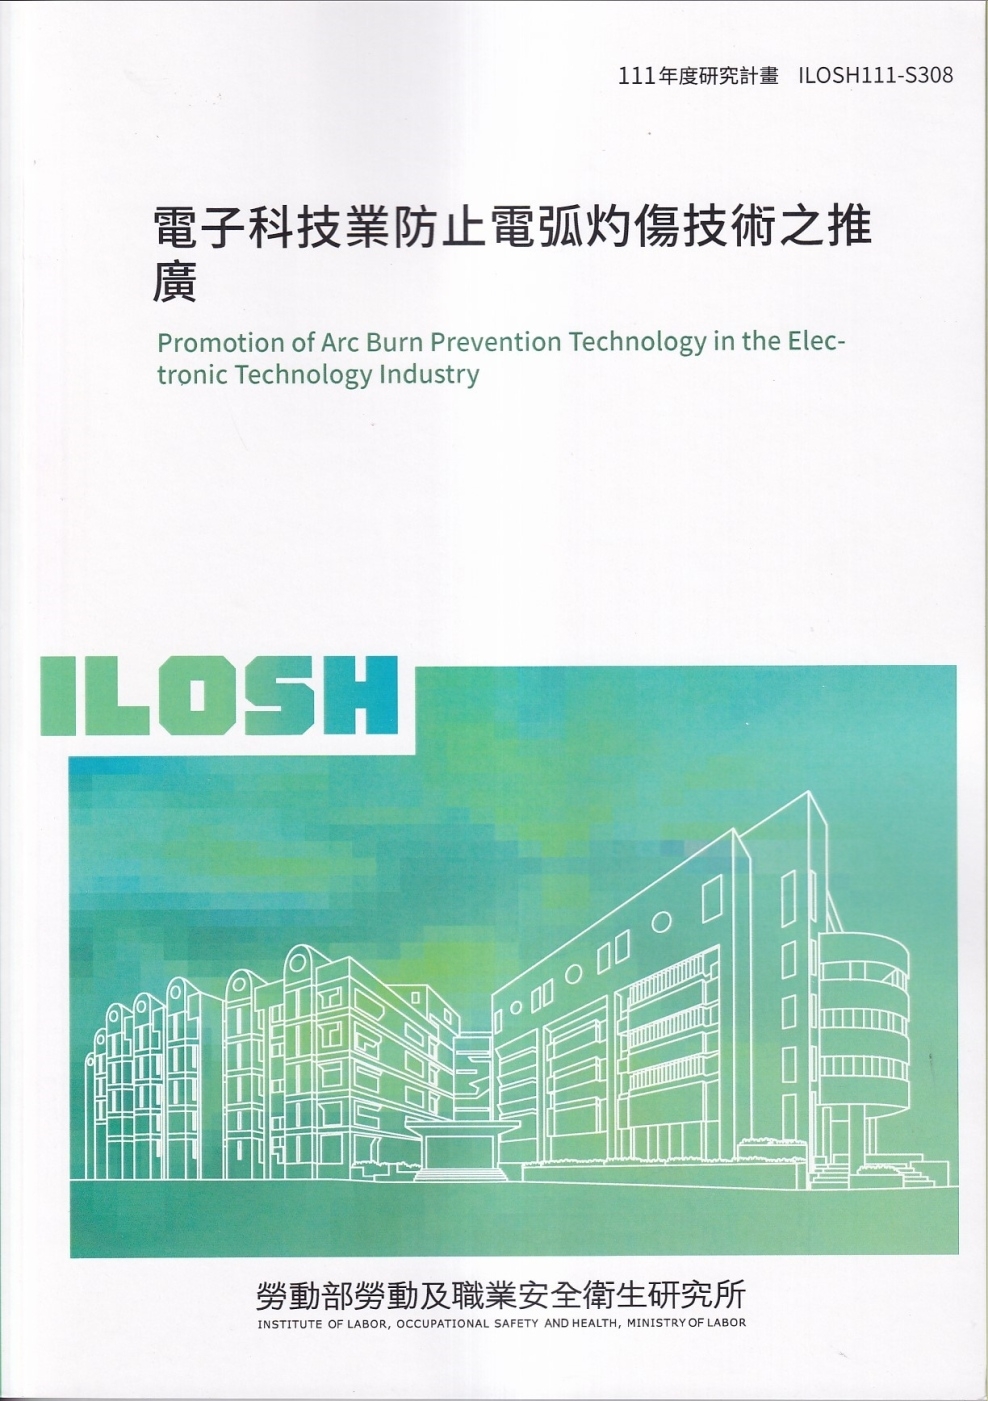 電子科技業防止電弧灼傷技術之推廣ILOSH111-S308